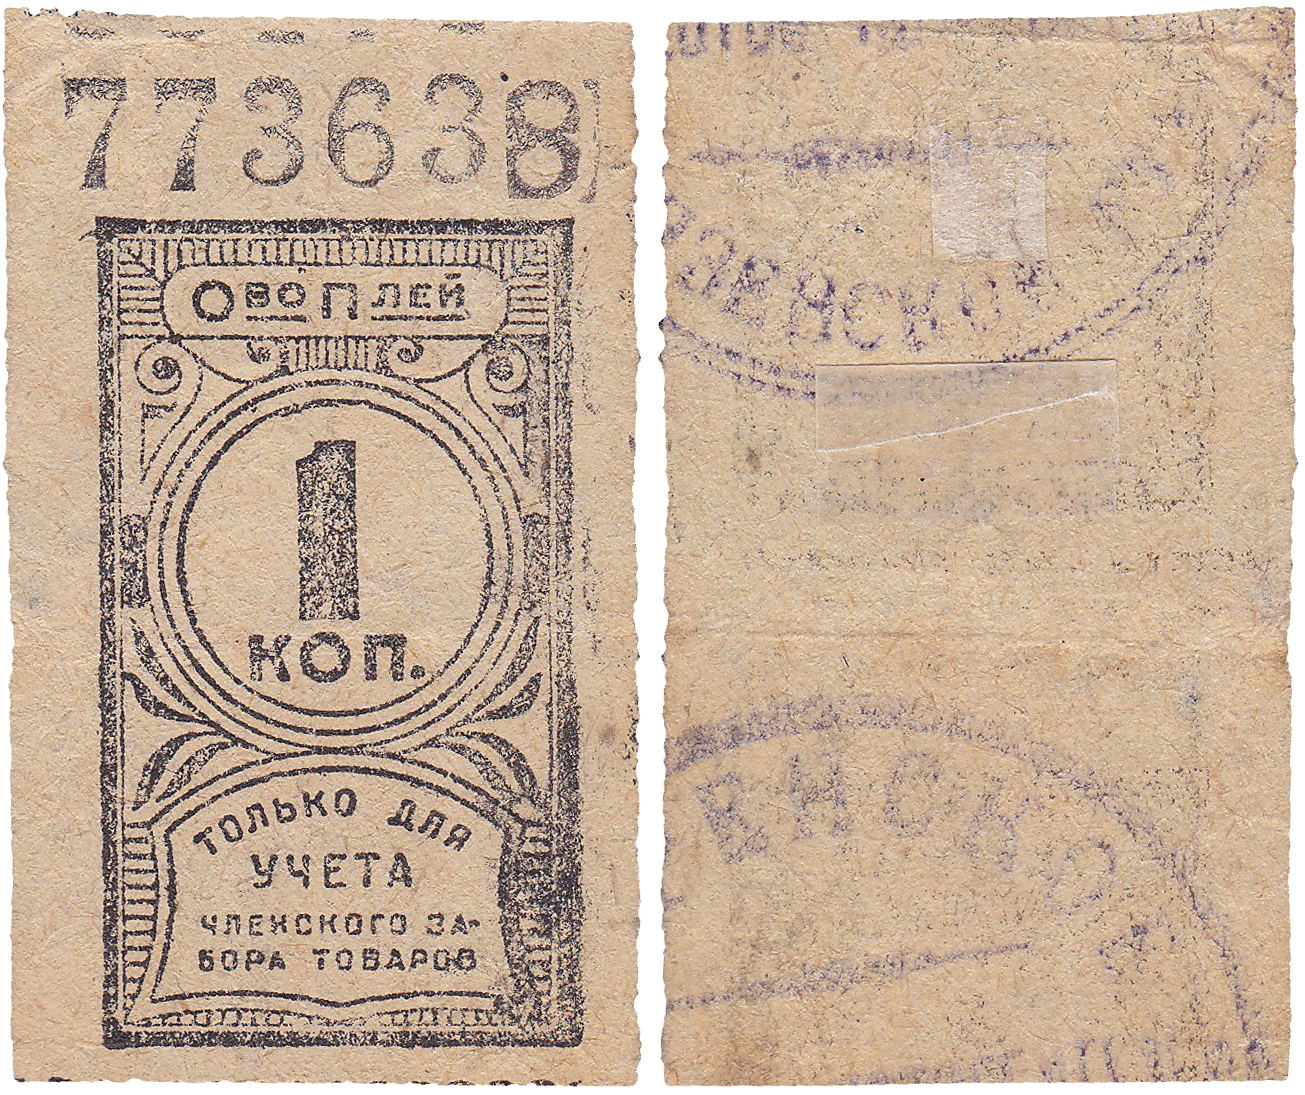 1 Копейка для учета членского забора товаров 1925 год. Пензенское Потребительское общество